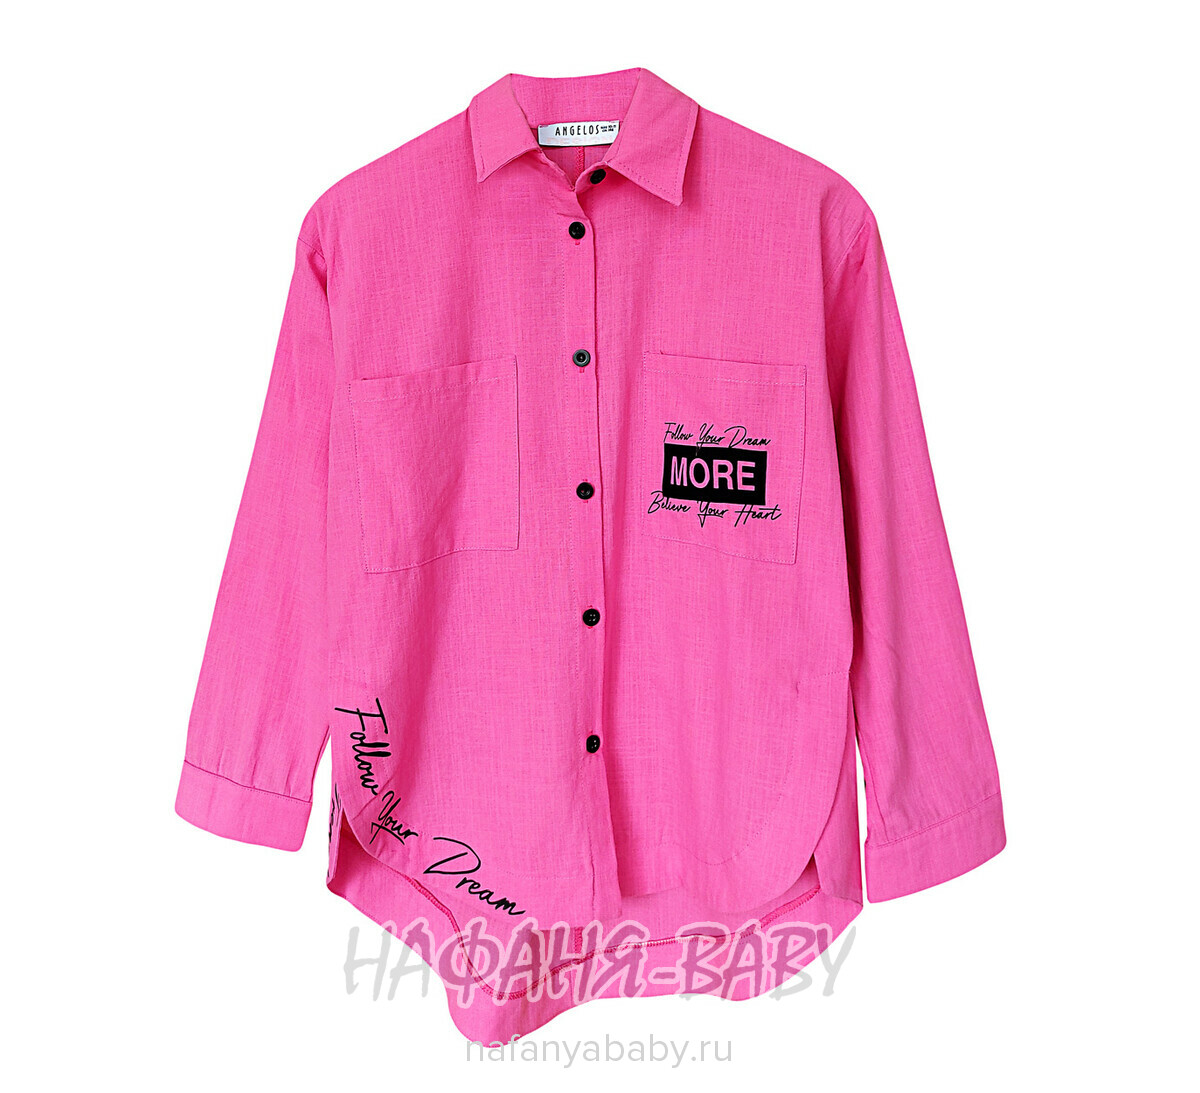 Модная летняя рубашка TK арт: 1968, 5-9 лет, 10-15 лет, цвет сиренево-розовый, оптом Турция